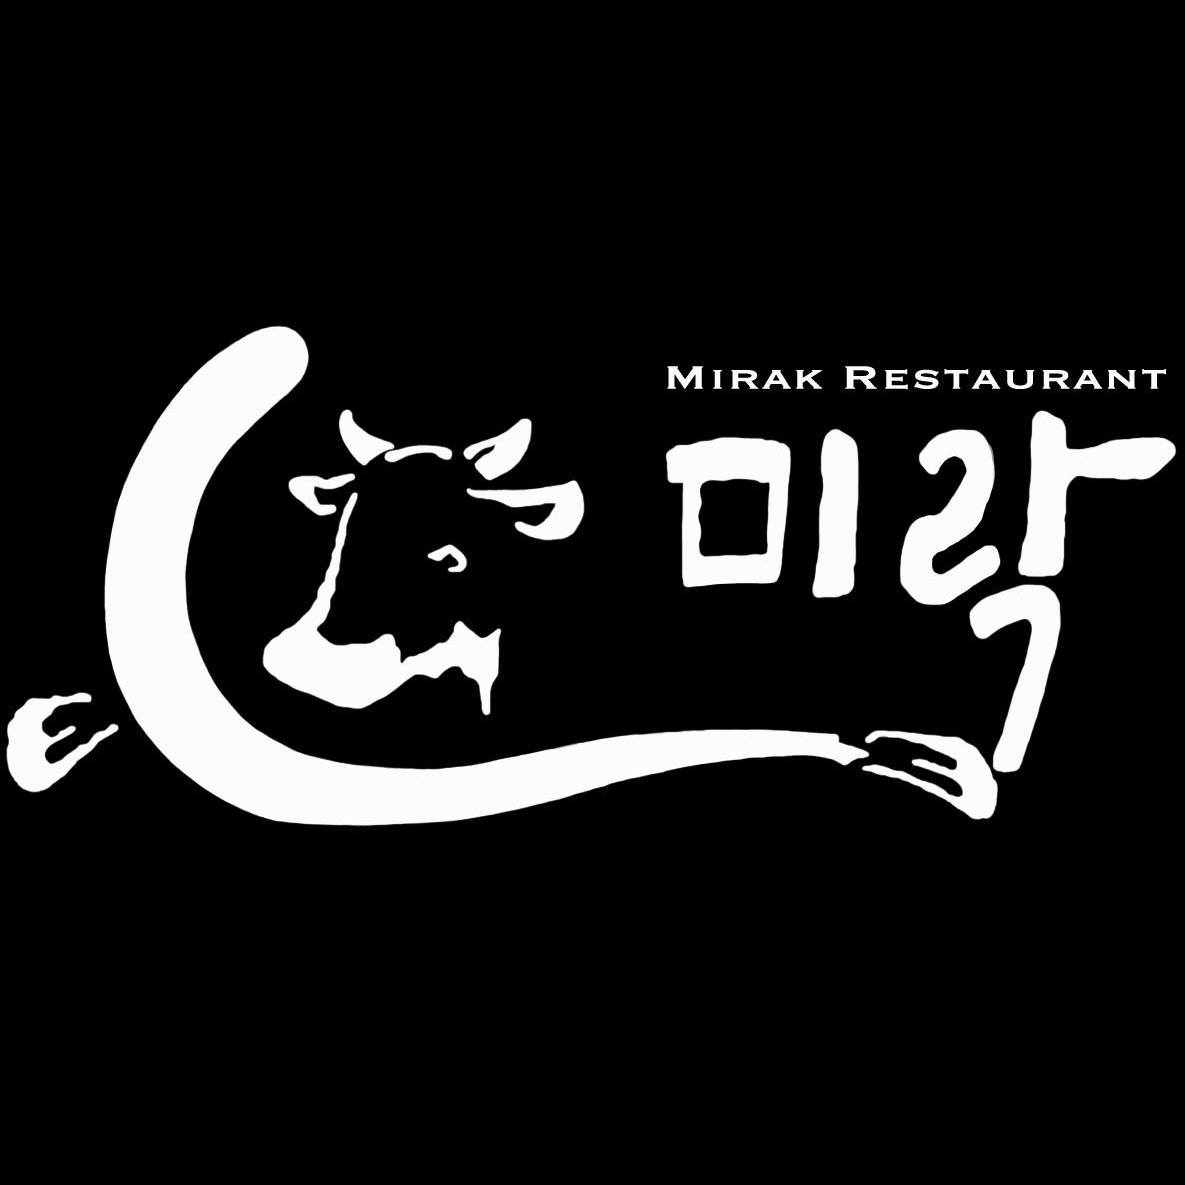 Mirak Restaurant